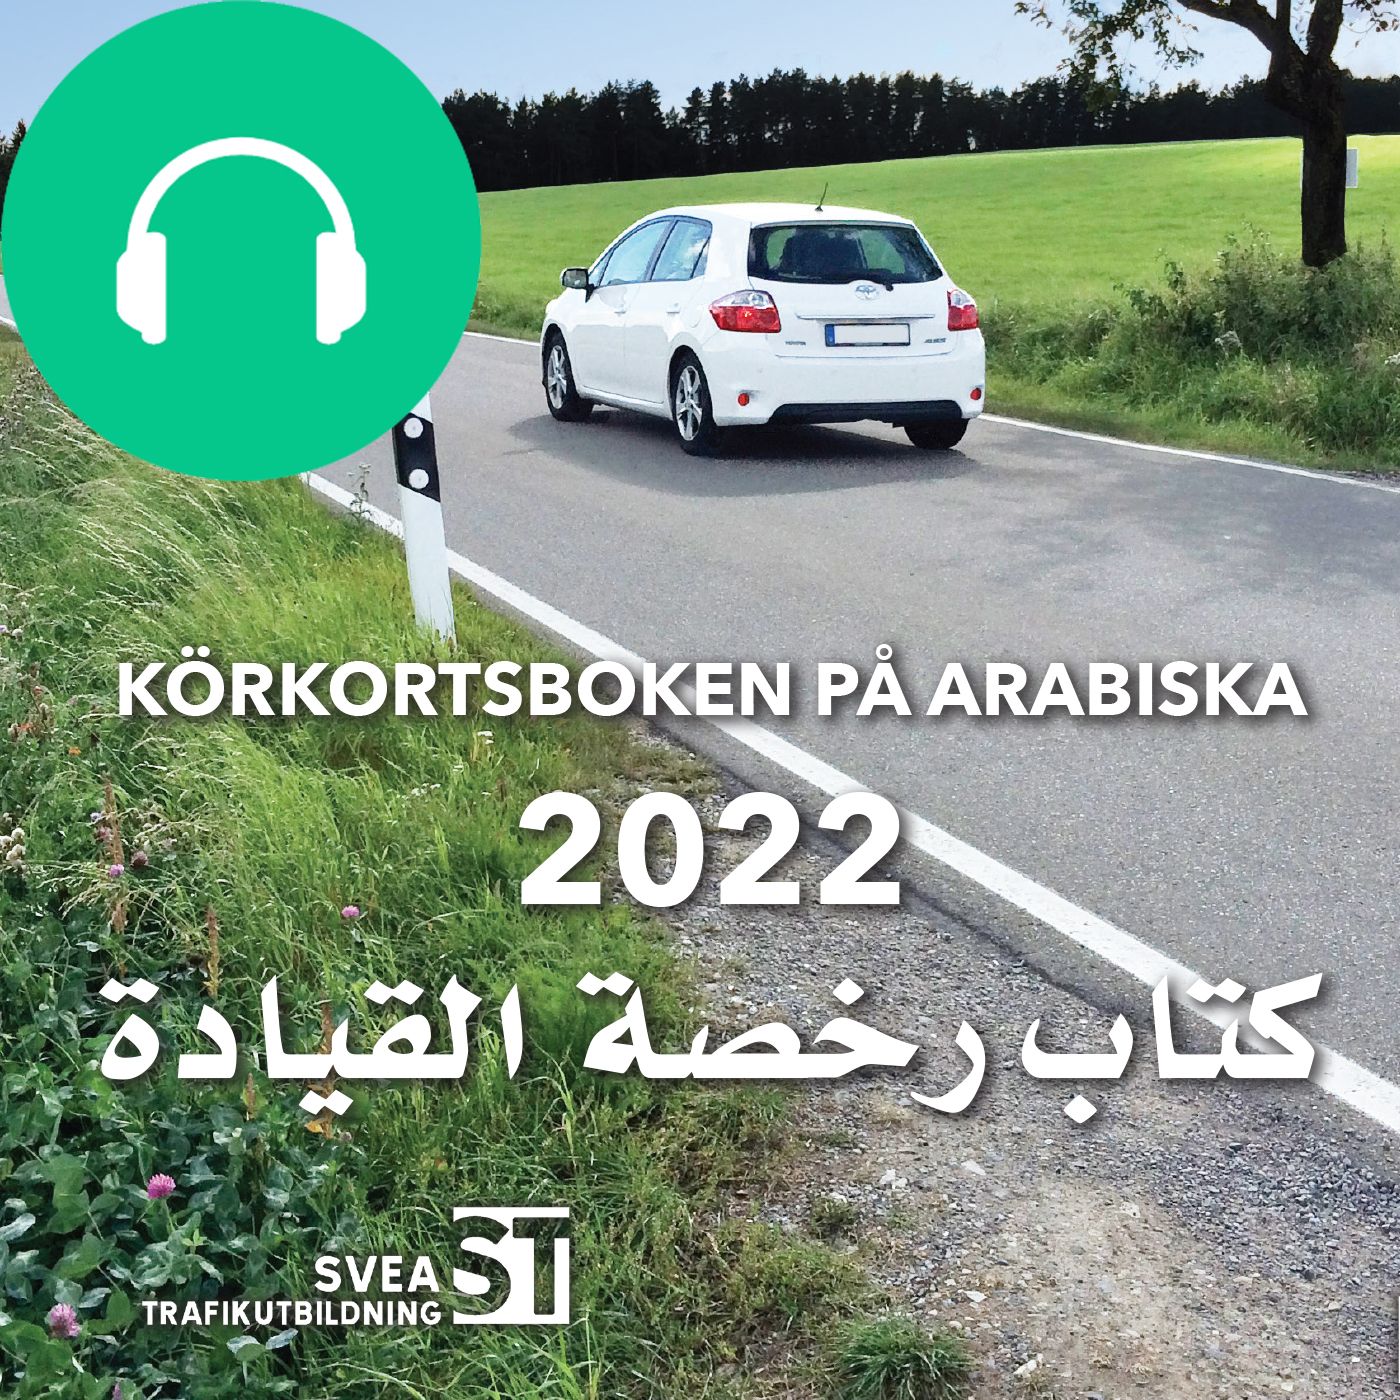 Körkortsboken på Arabiska 2022, ljudbok av Svea Trafikutbildning